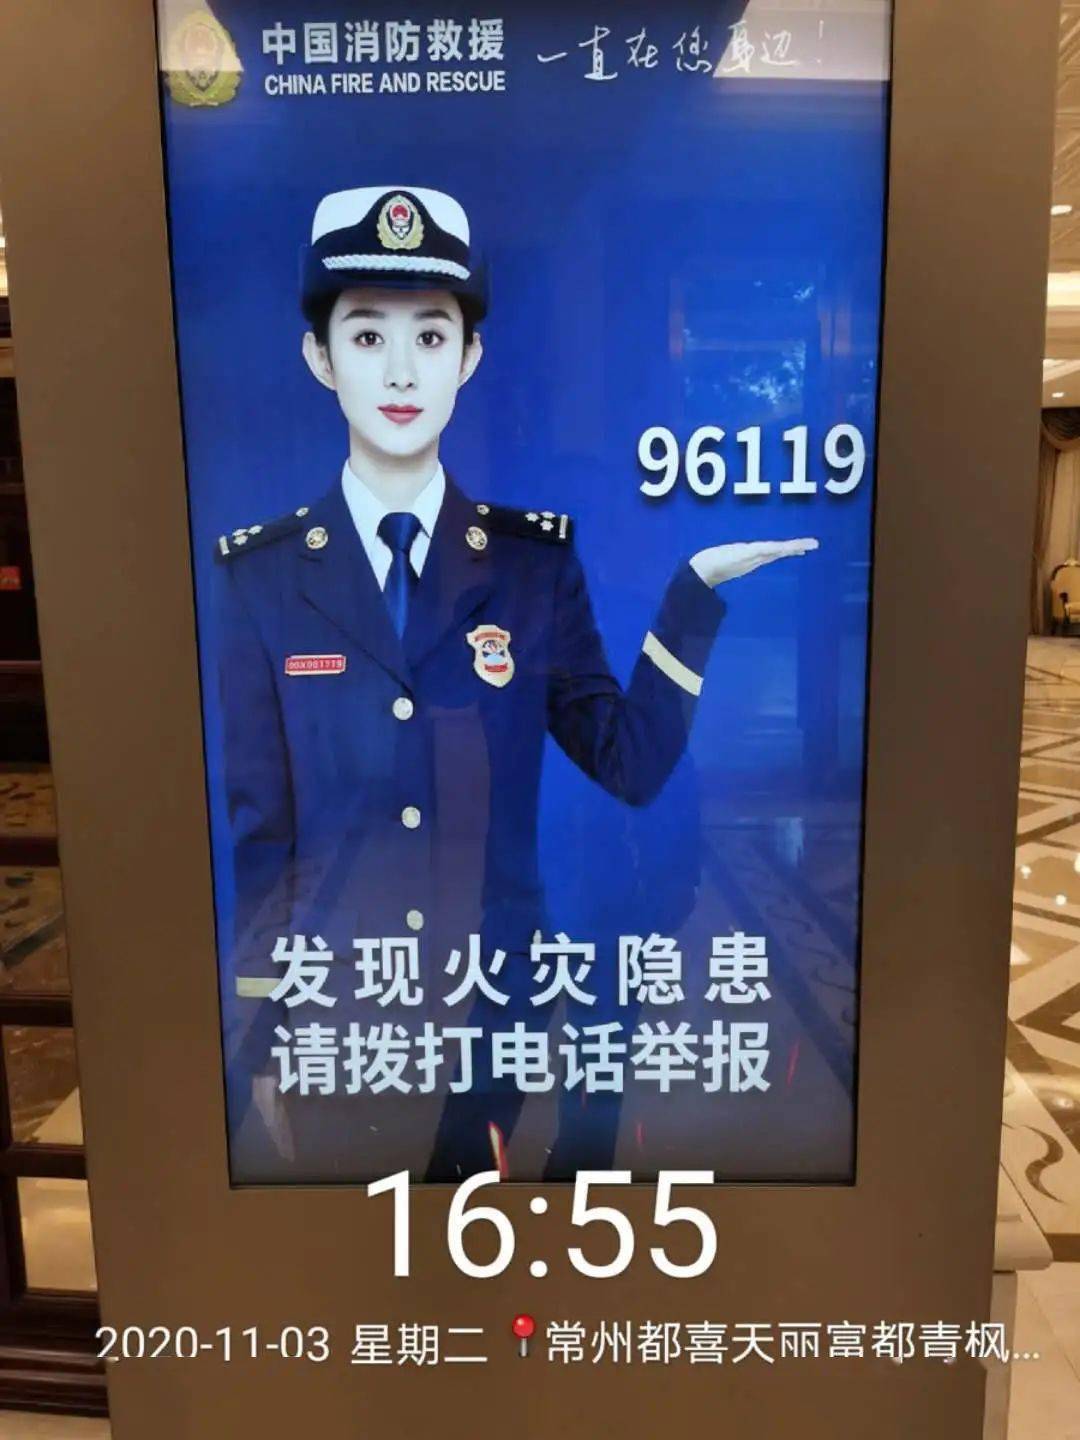 关注"119"|吴京,赵丽颖助力常州消防宣传!